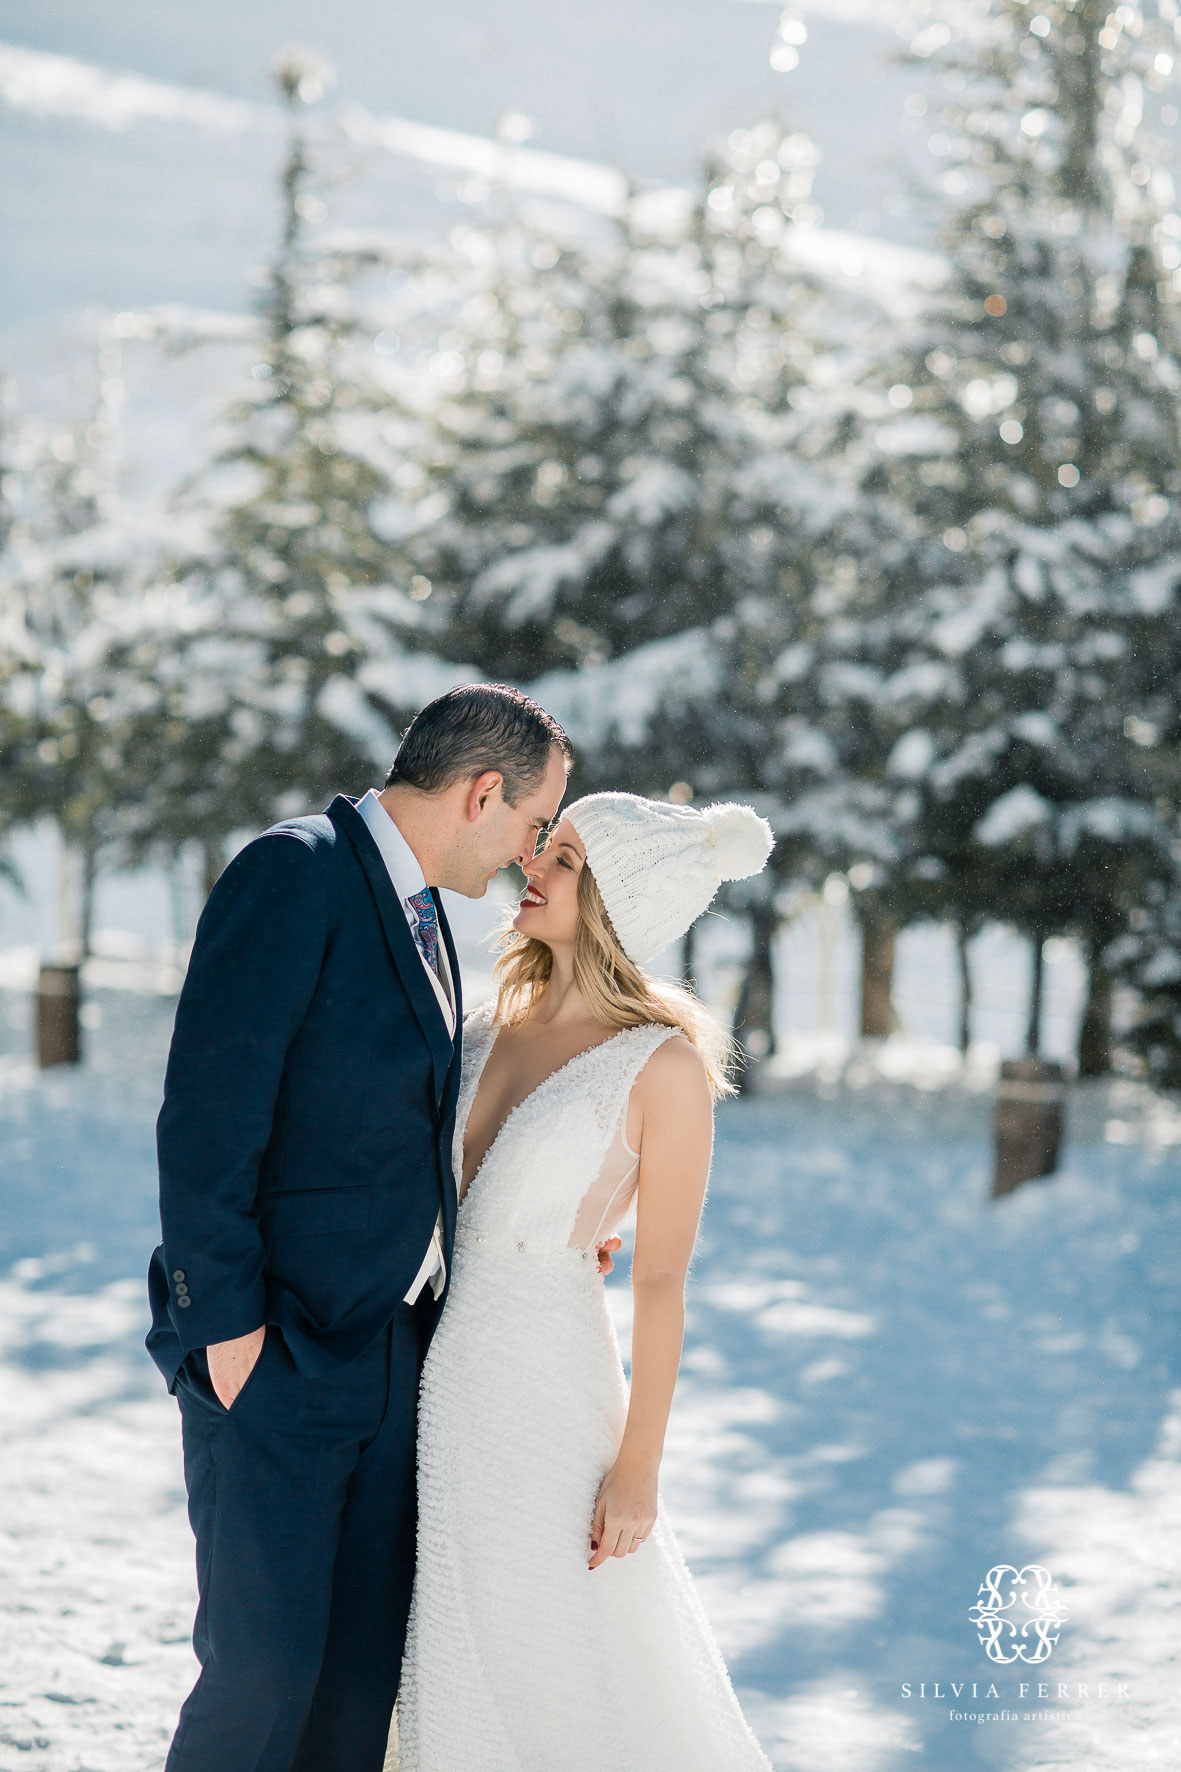 Postboda en sierra nevada granada fotografos boda novios